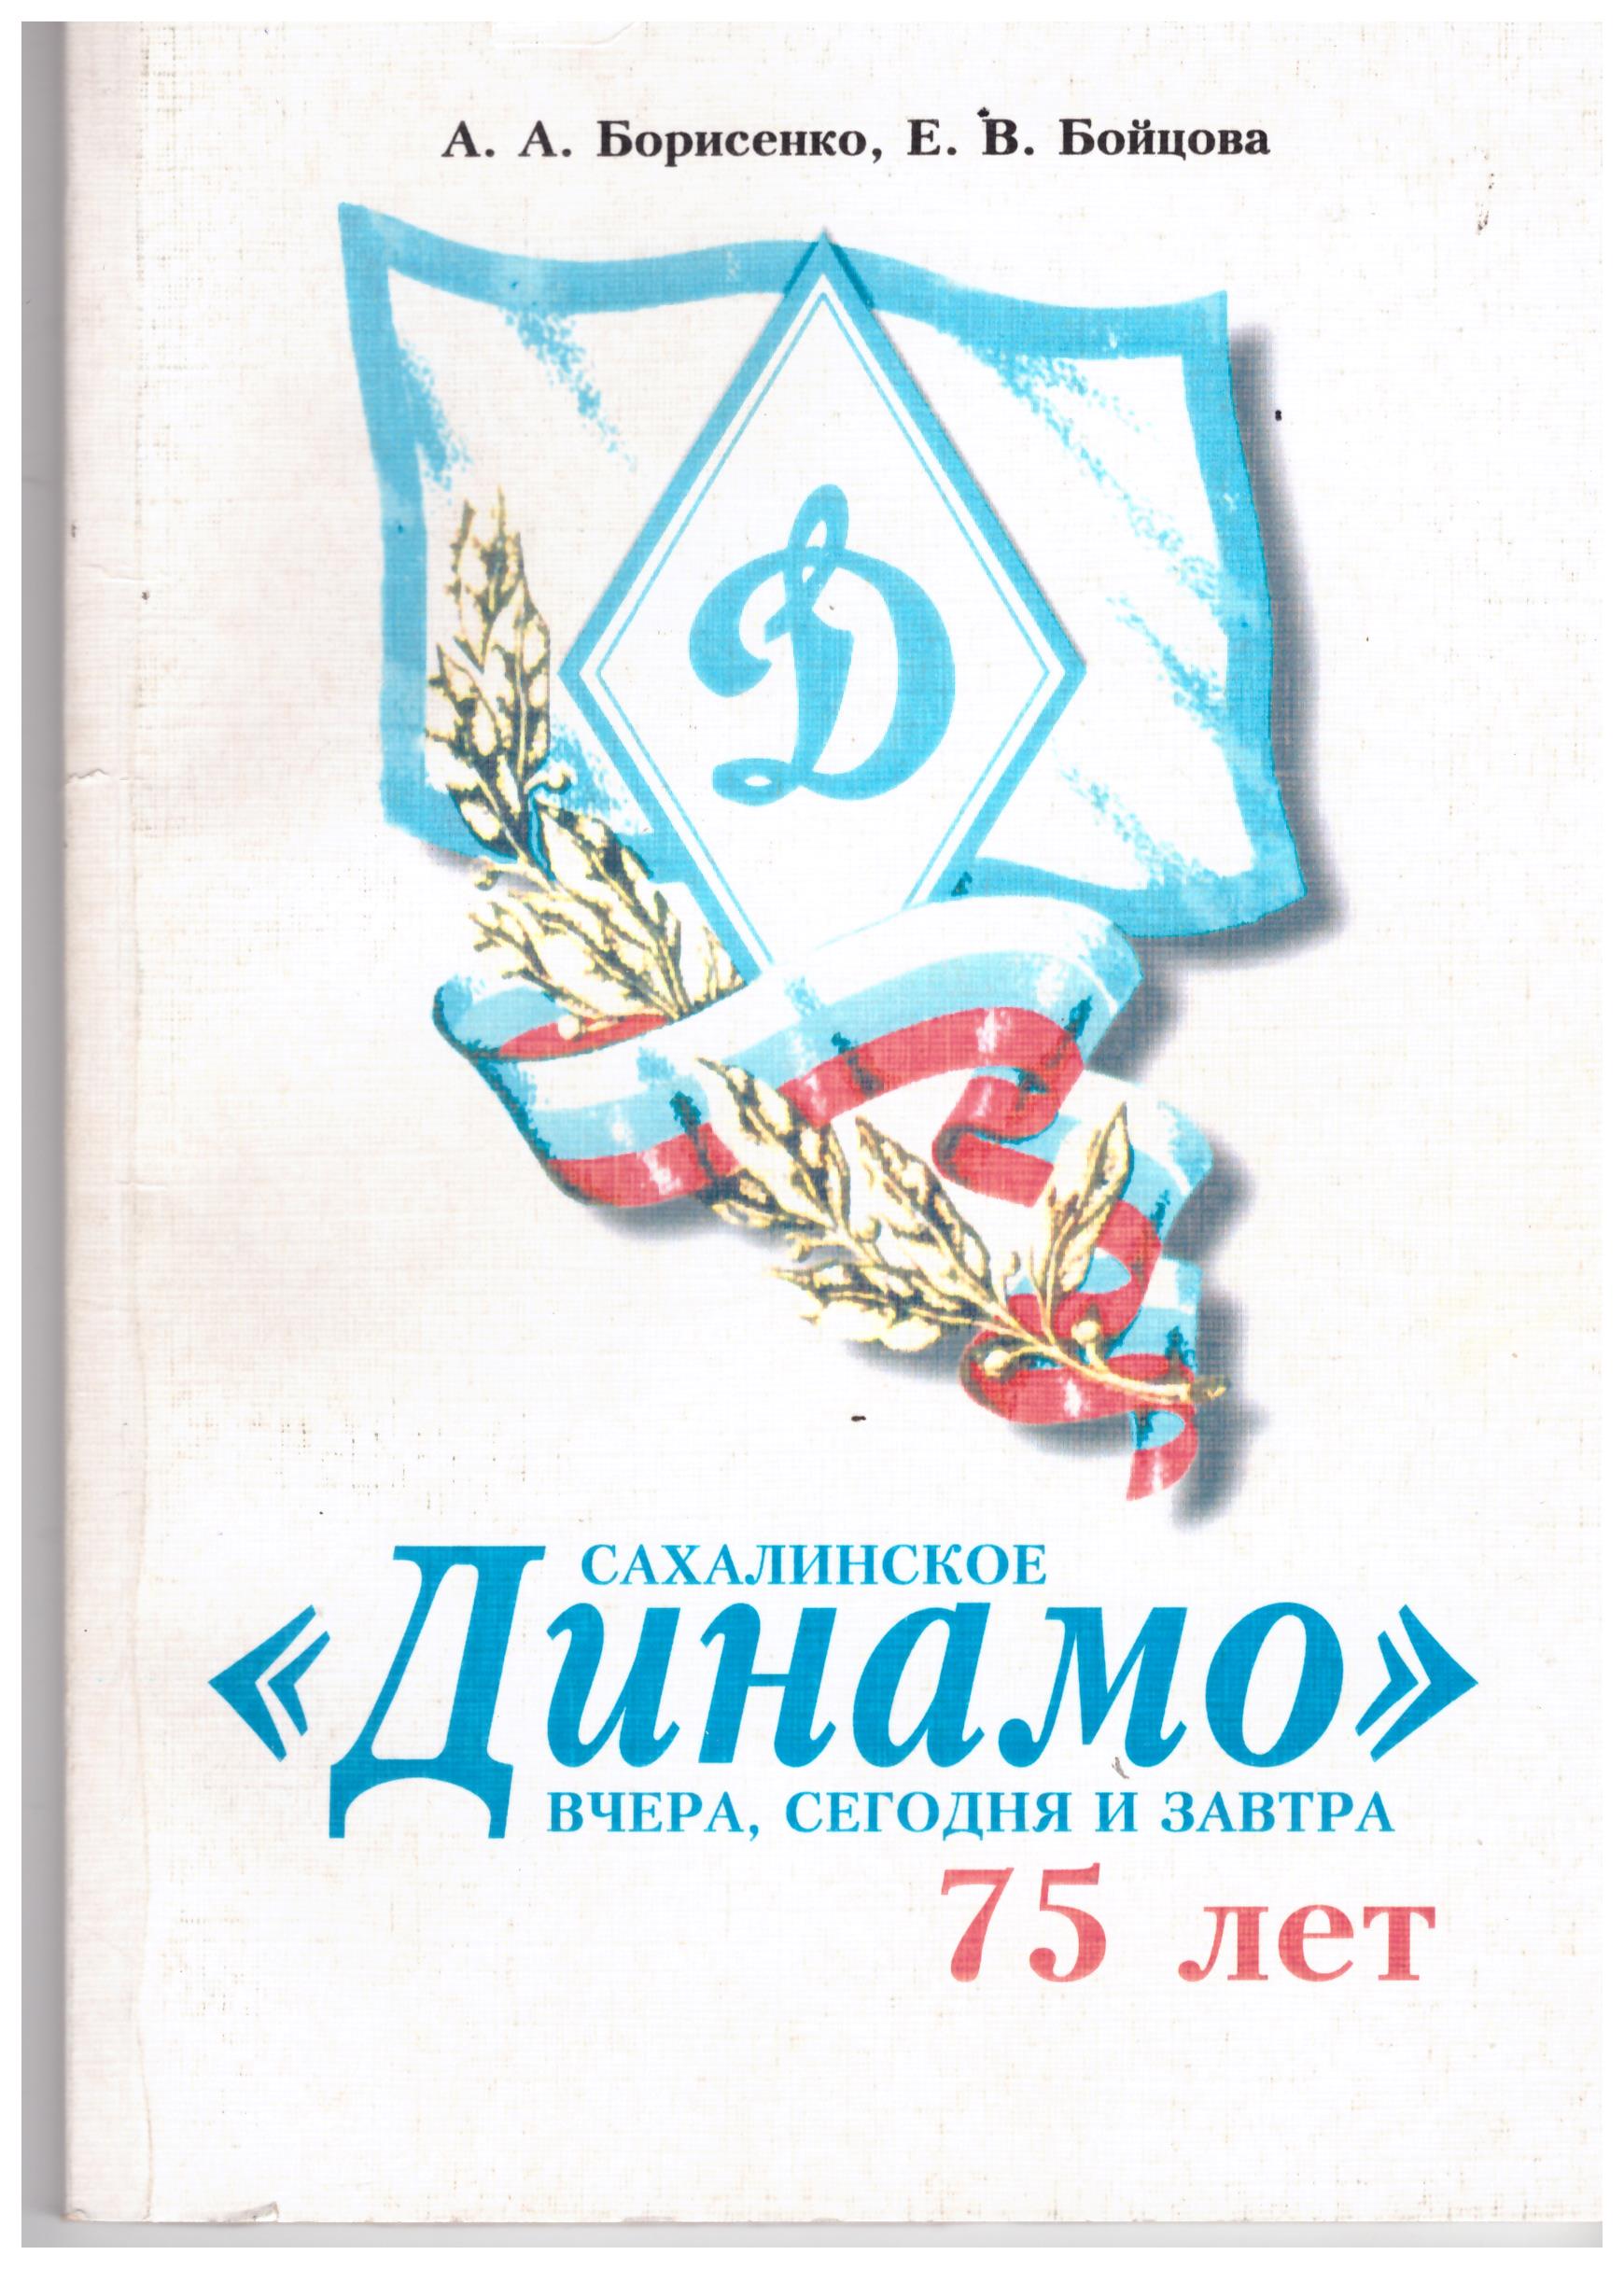 Литература о сахалинском спорте